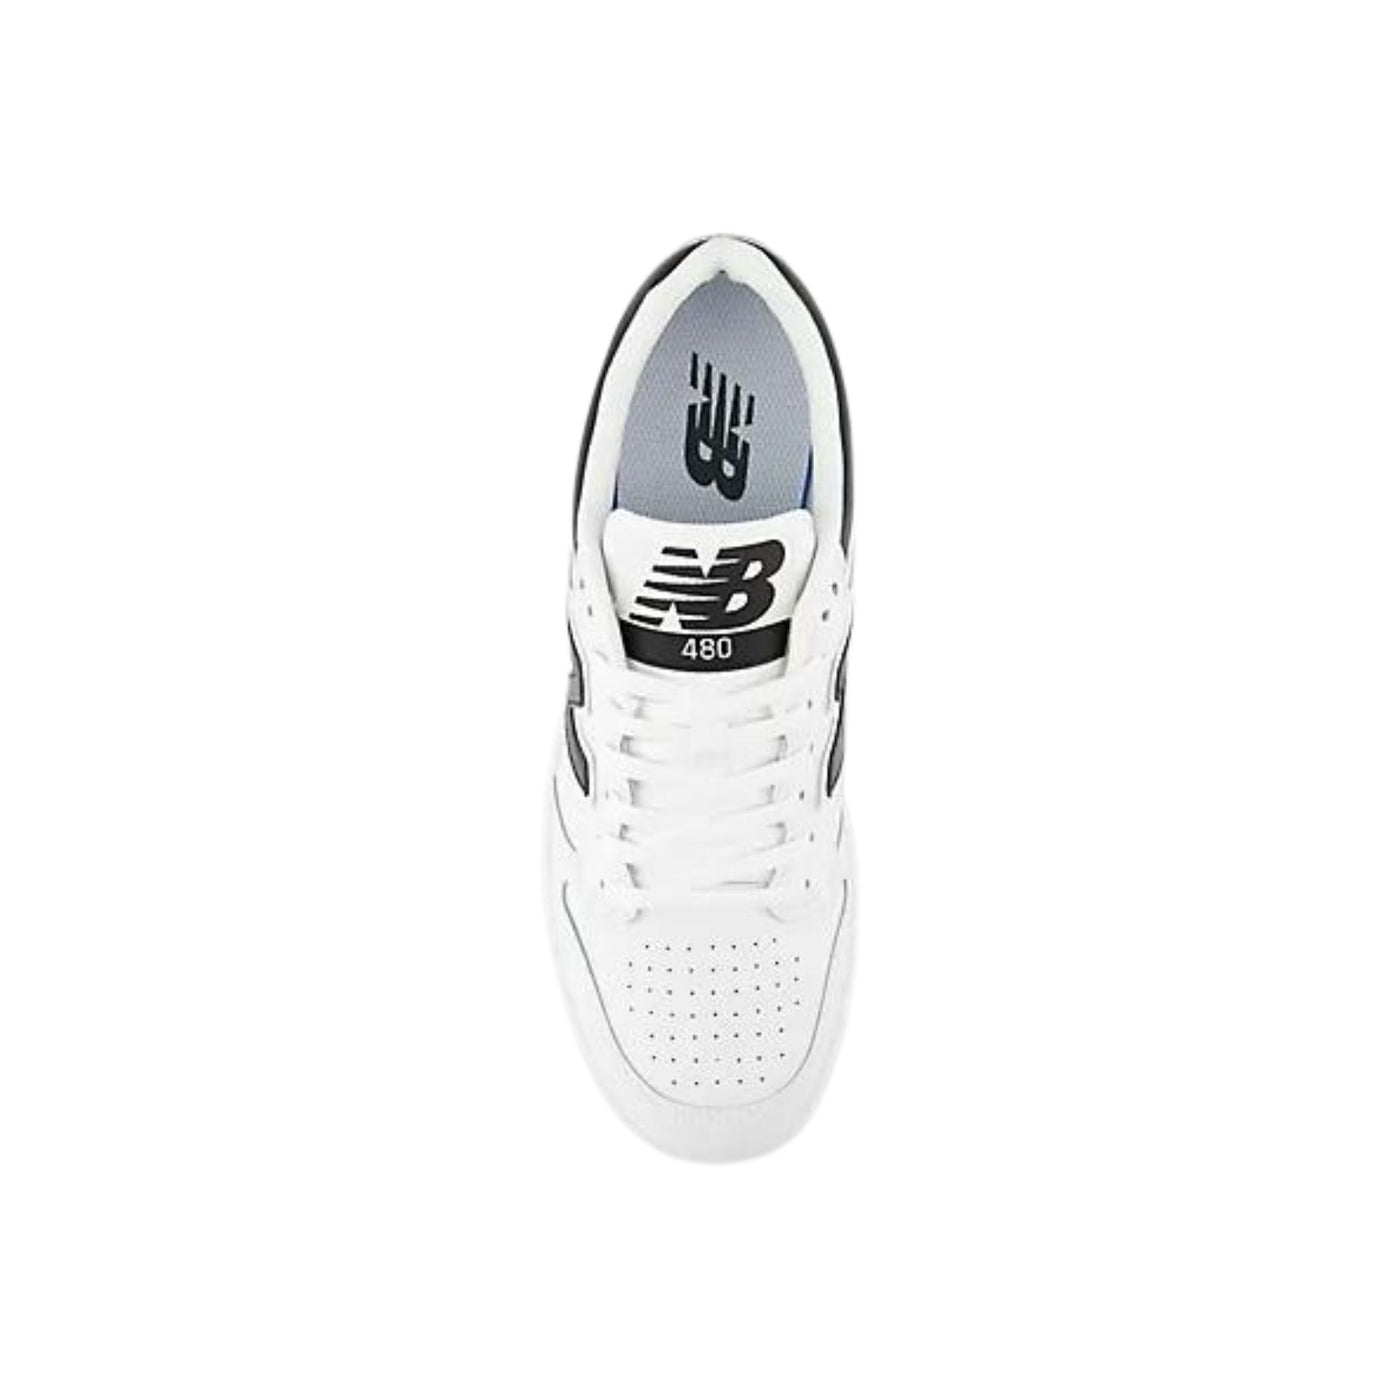 Sneakers Unisex modello 480 con dettagli neri